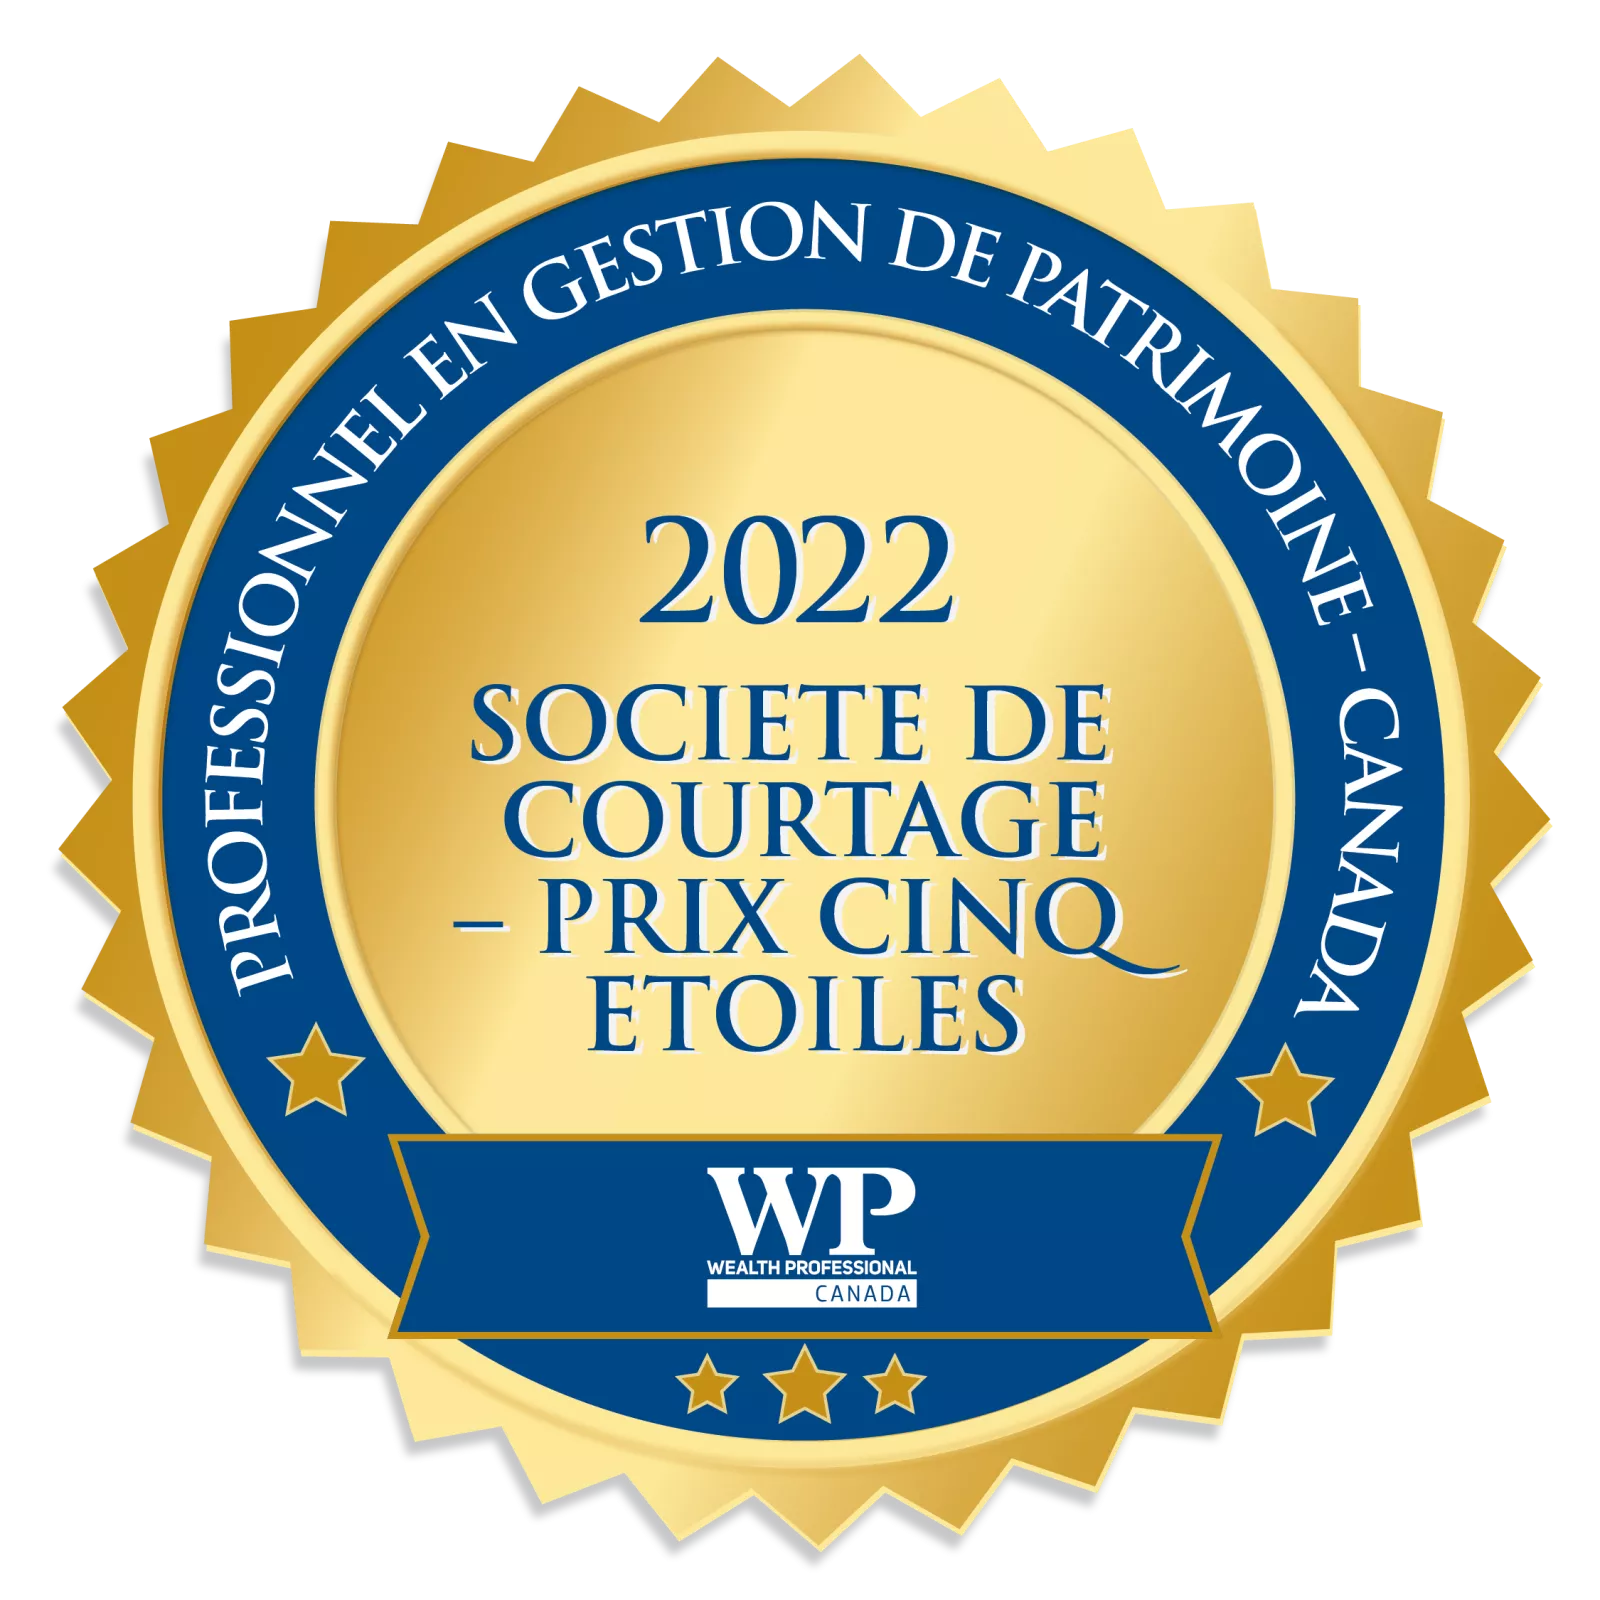  WPC Brokerage Award, 2022
